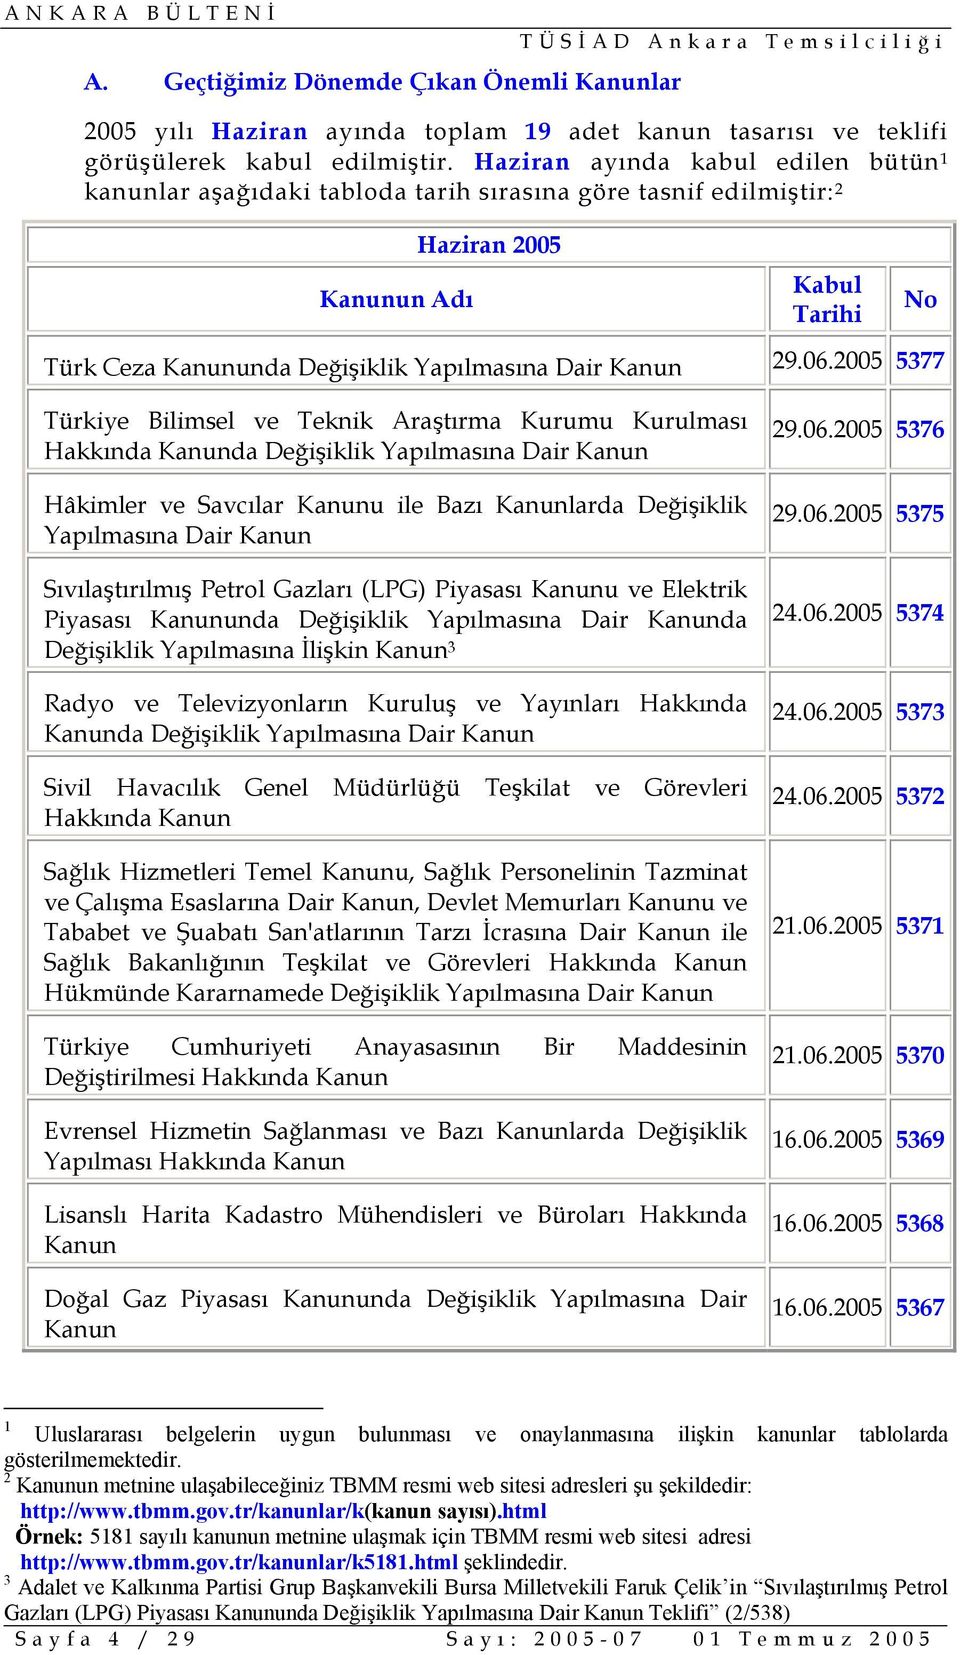 06.2005 5377 No Türkiye Bilimsel ve Teknik Araştırma Kurumu Kurulması Hakkında Kanunda Değişiklik Yapılmasına Dair Kanun Hâkimler ve Savcılar Kanunu ile Bazı Kanunlarda Değişiklik Yapılmasına Dair